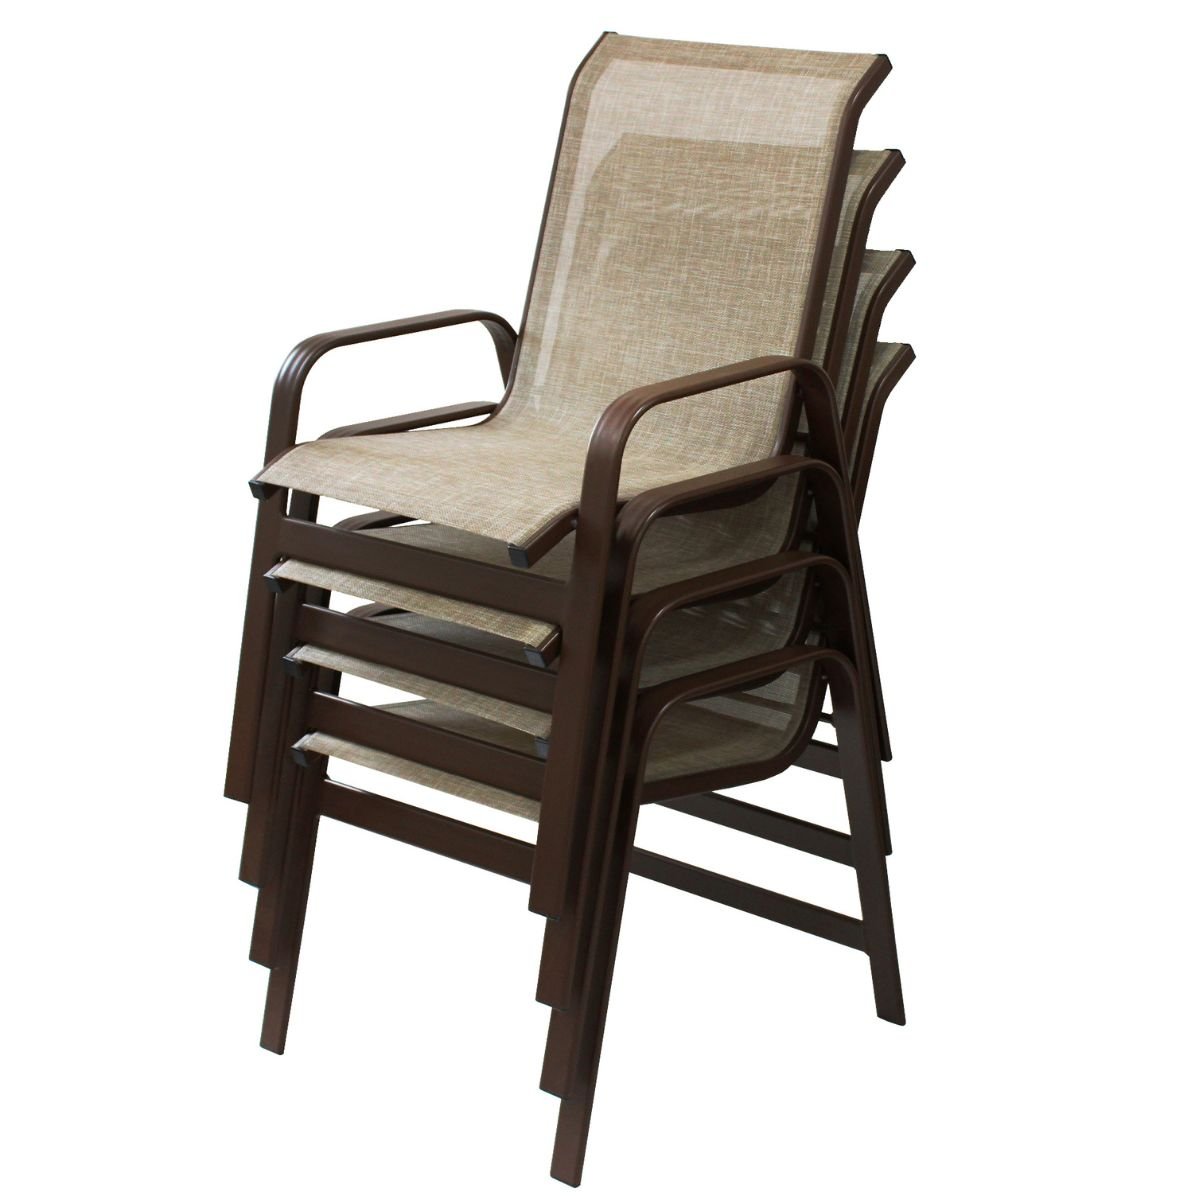 Kit 4 Cadeiras para Jardim Piscina Varanda em Alumínio Marrom e Tela Sling Capuccino